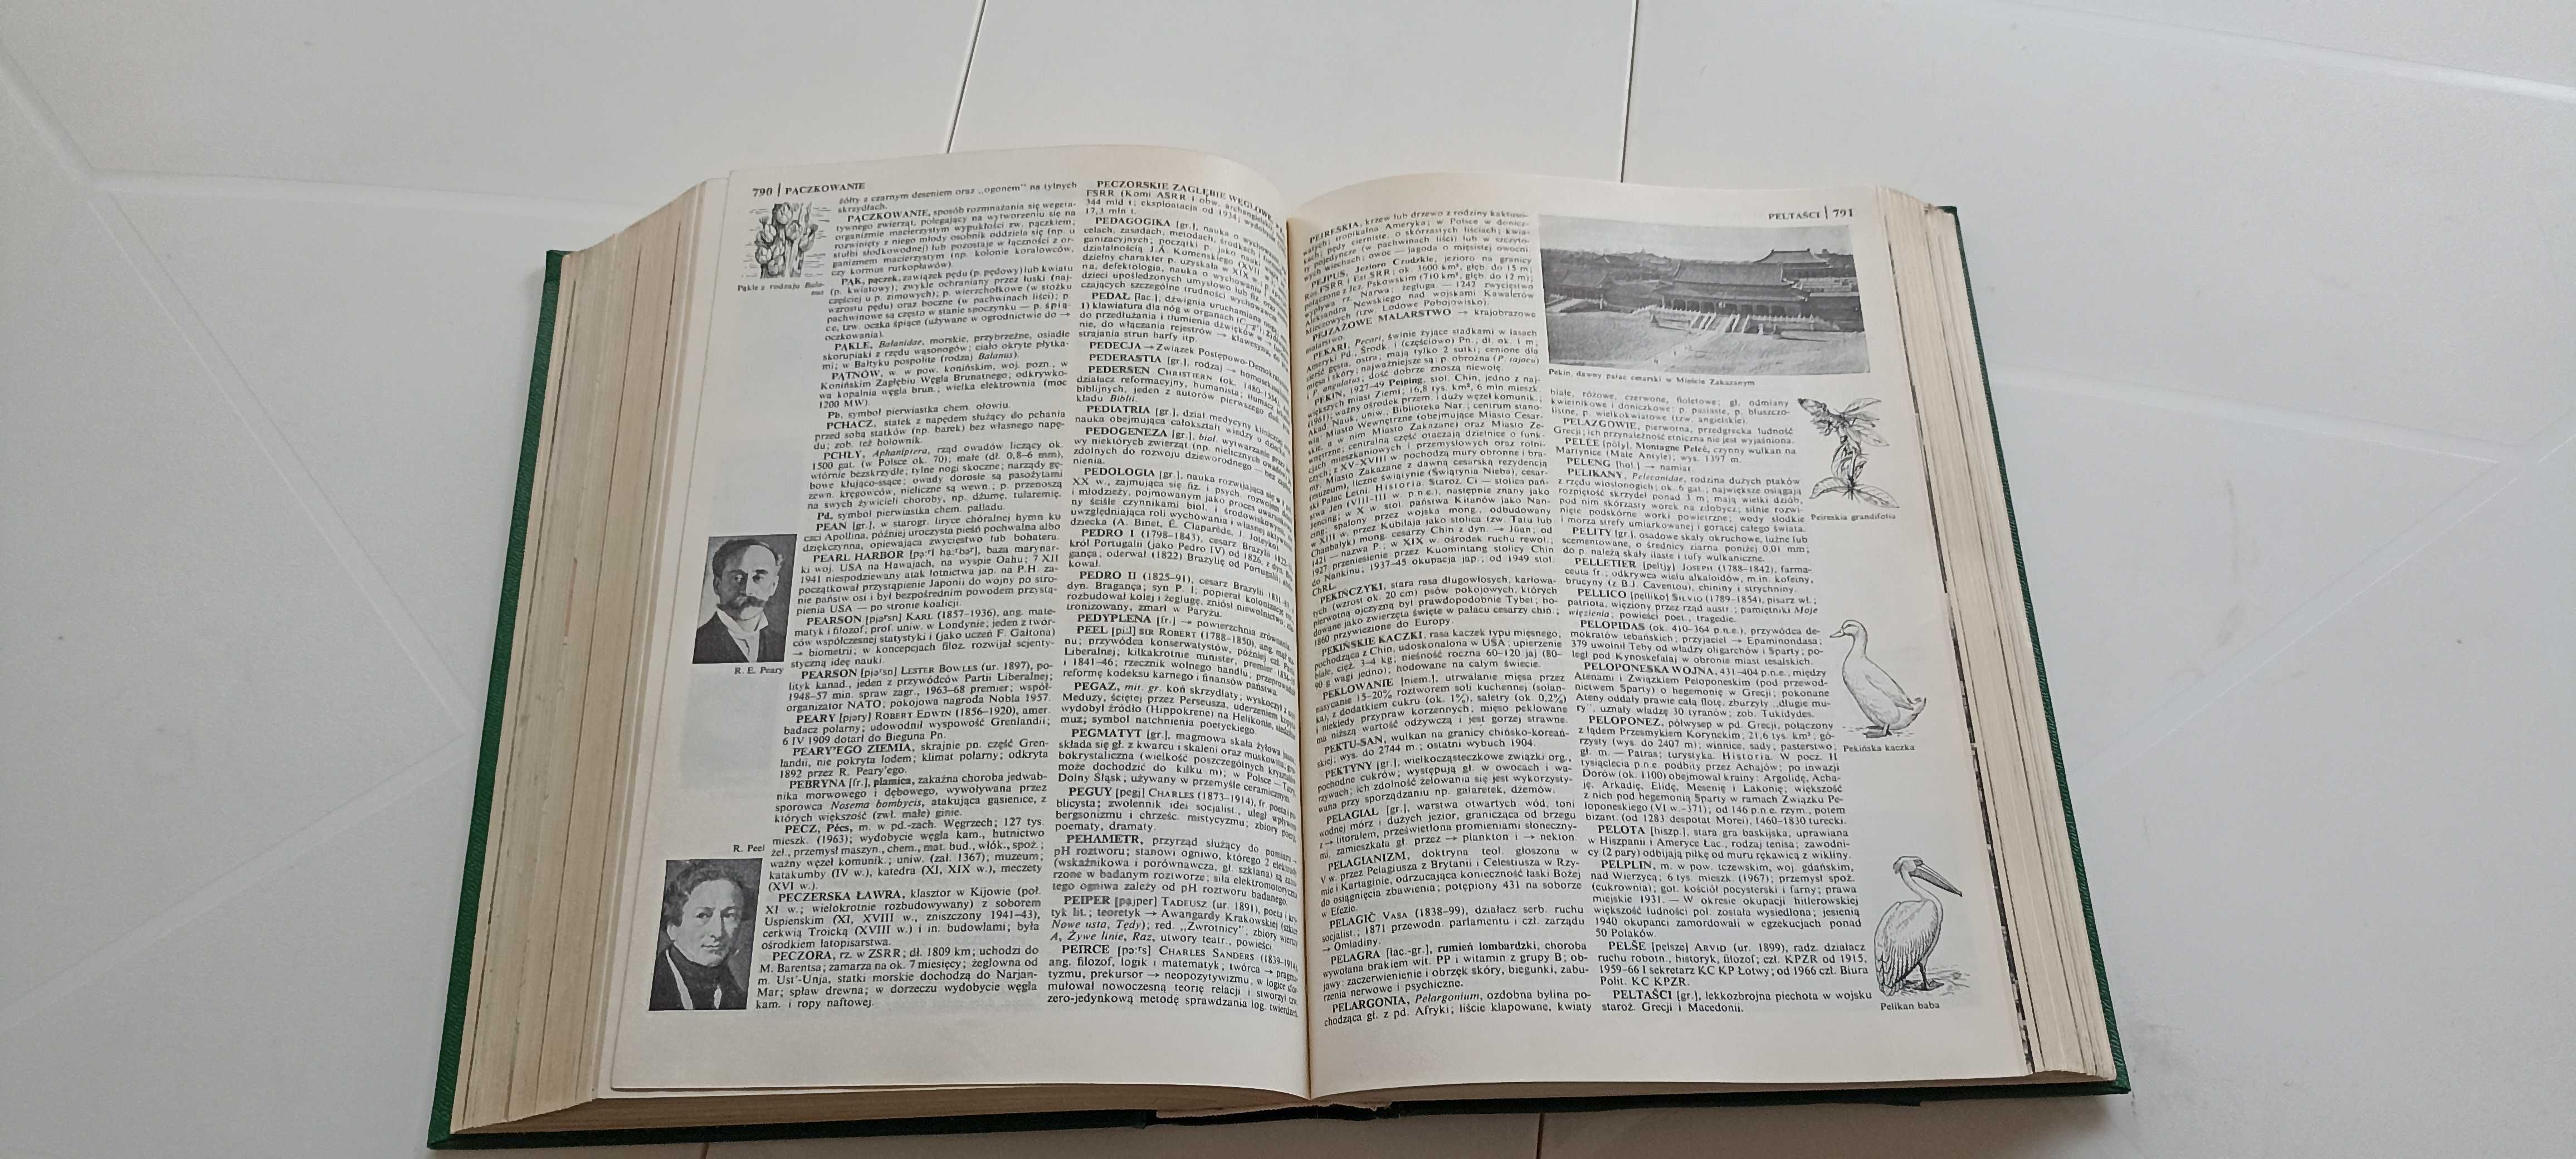 Mała Encyklopedia Powszechna PWN z 1970 roku.